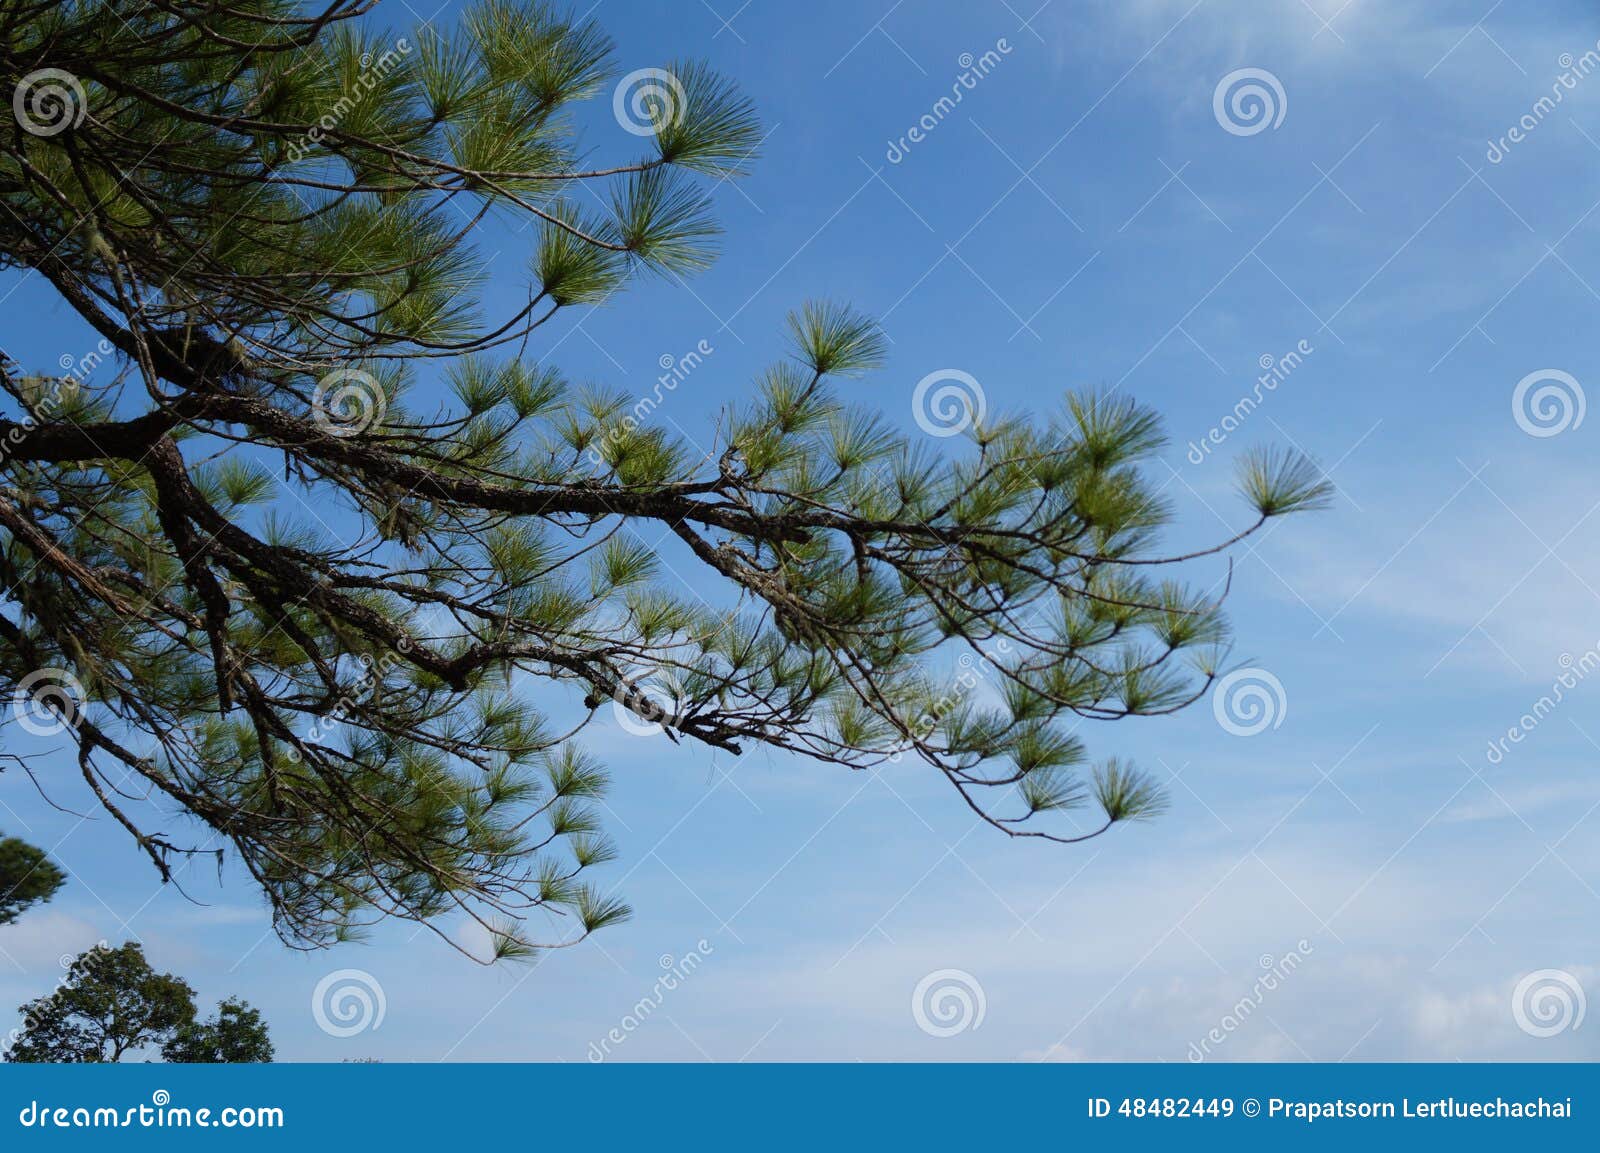  Sumatran Pine  2 stock image Image of pine  sumatran  